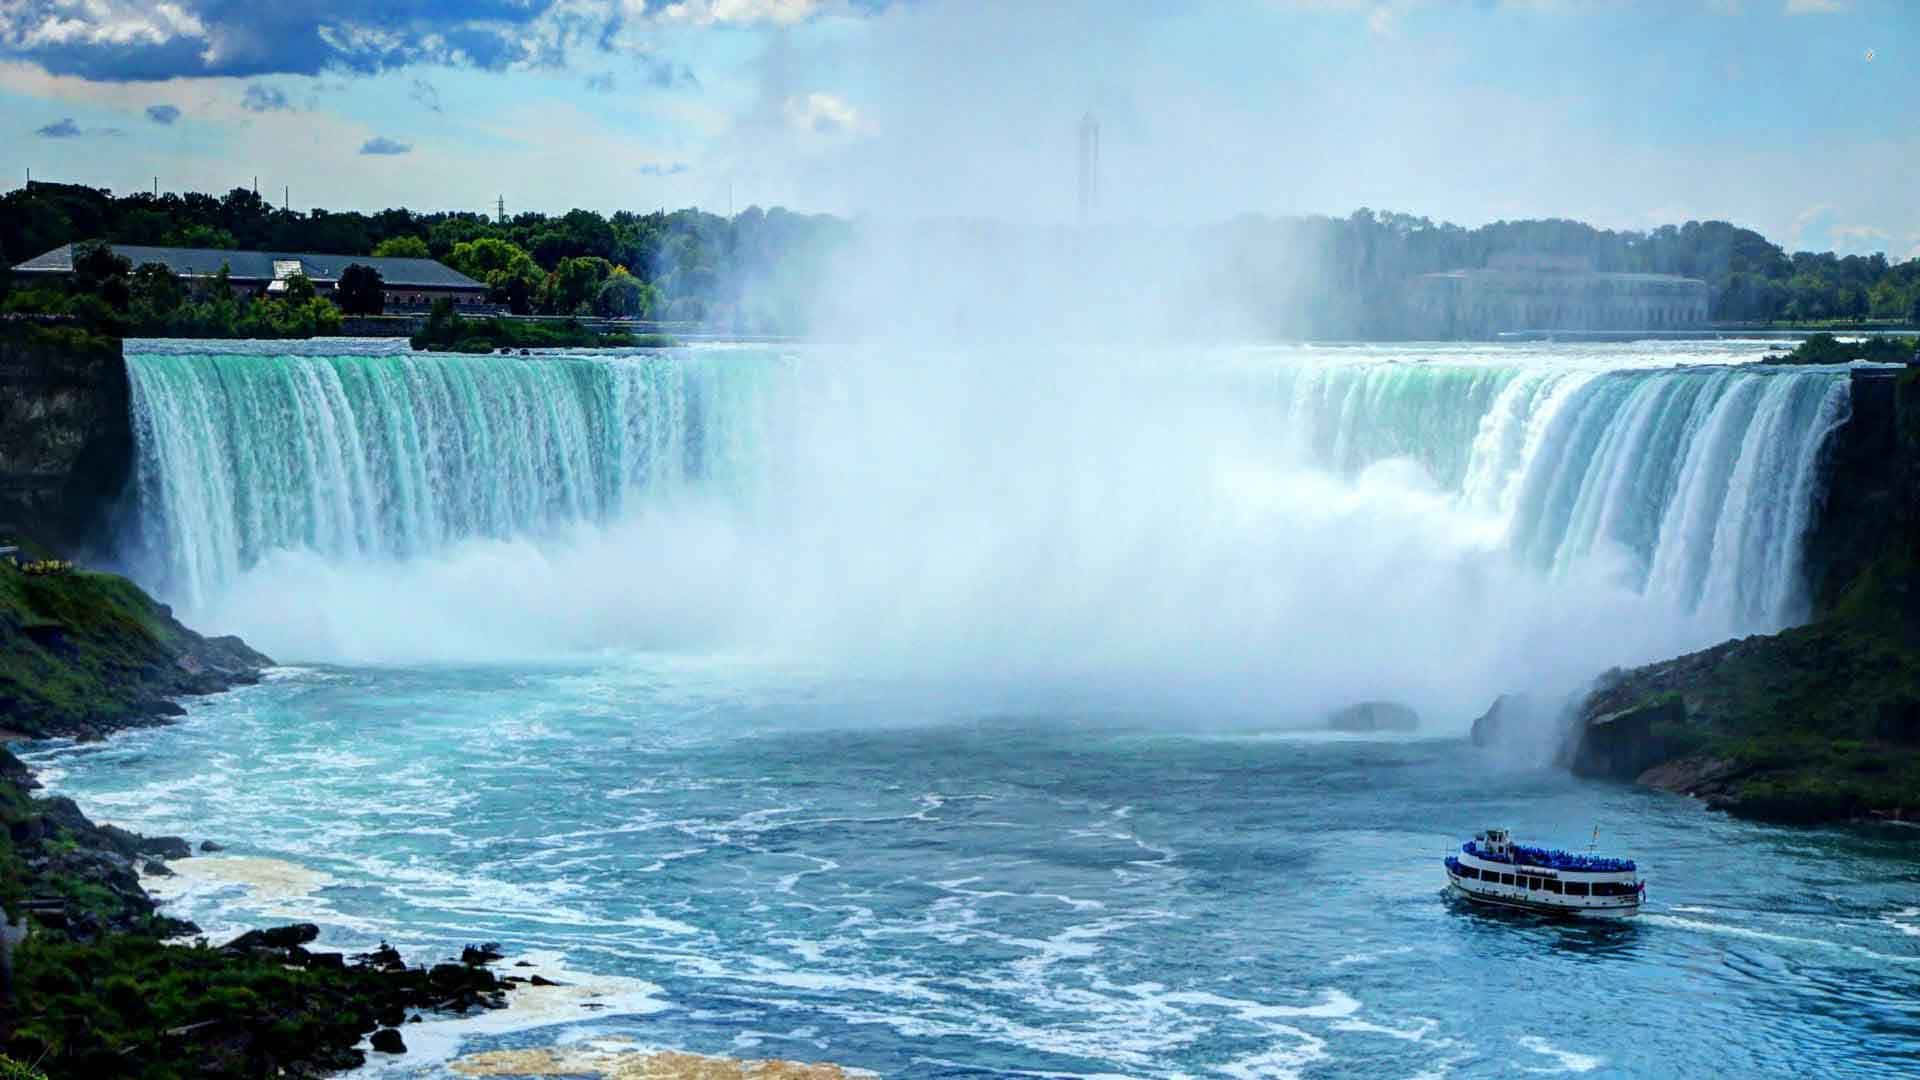 Diekleine Stadt Niagara Falls In Ontario, Kanada, Beheimatet Einen Der Längsten Und Majestätischsten Wasserfälle Der Welt.